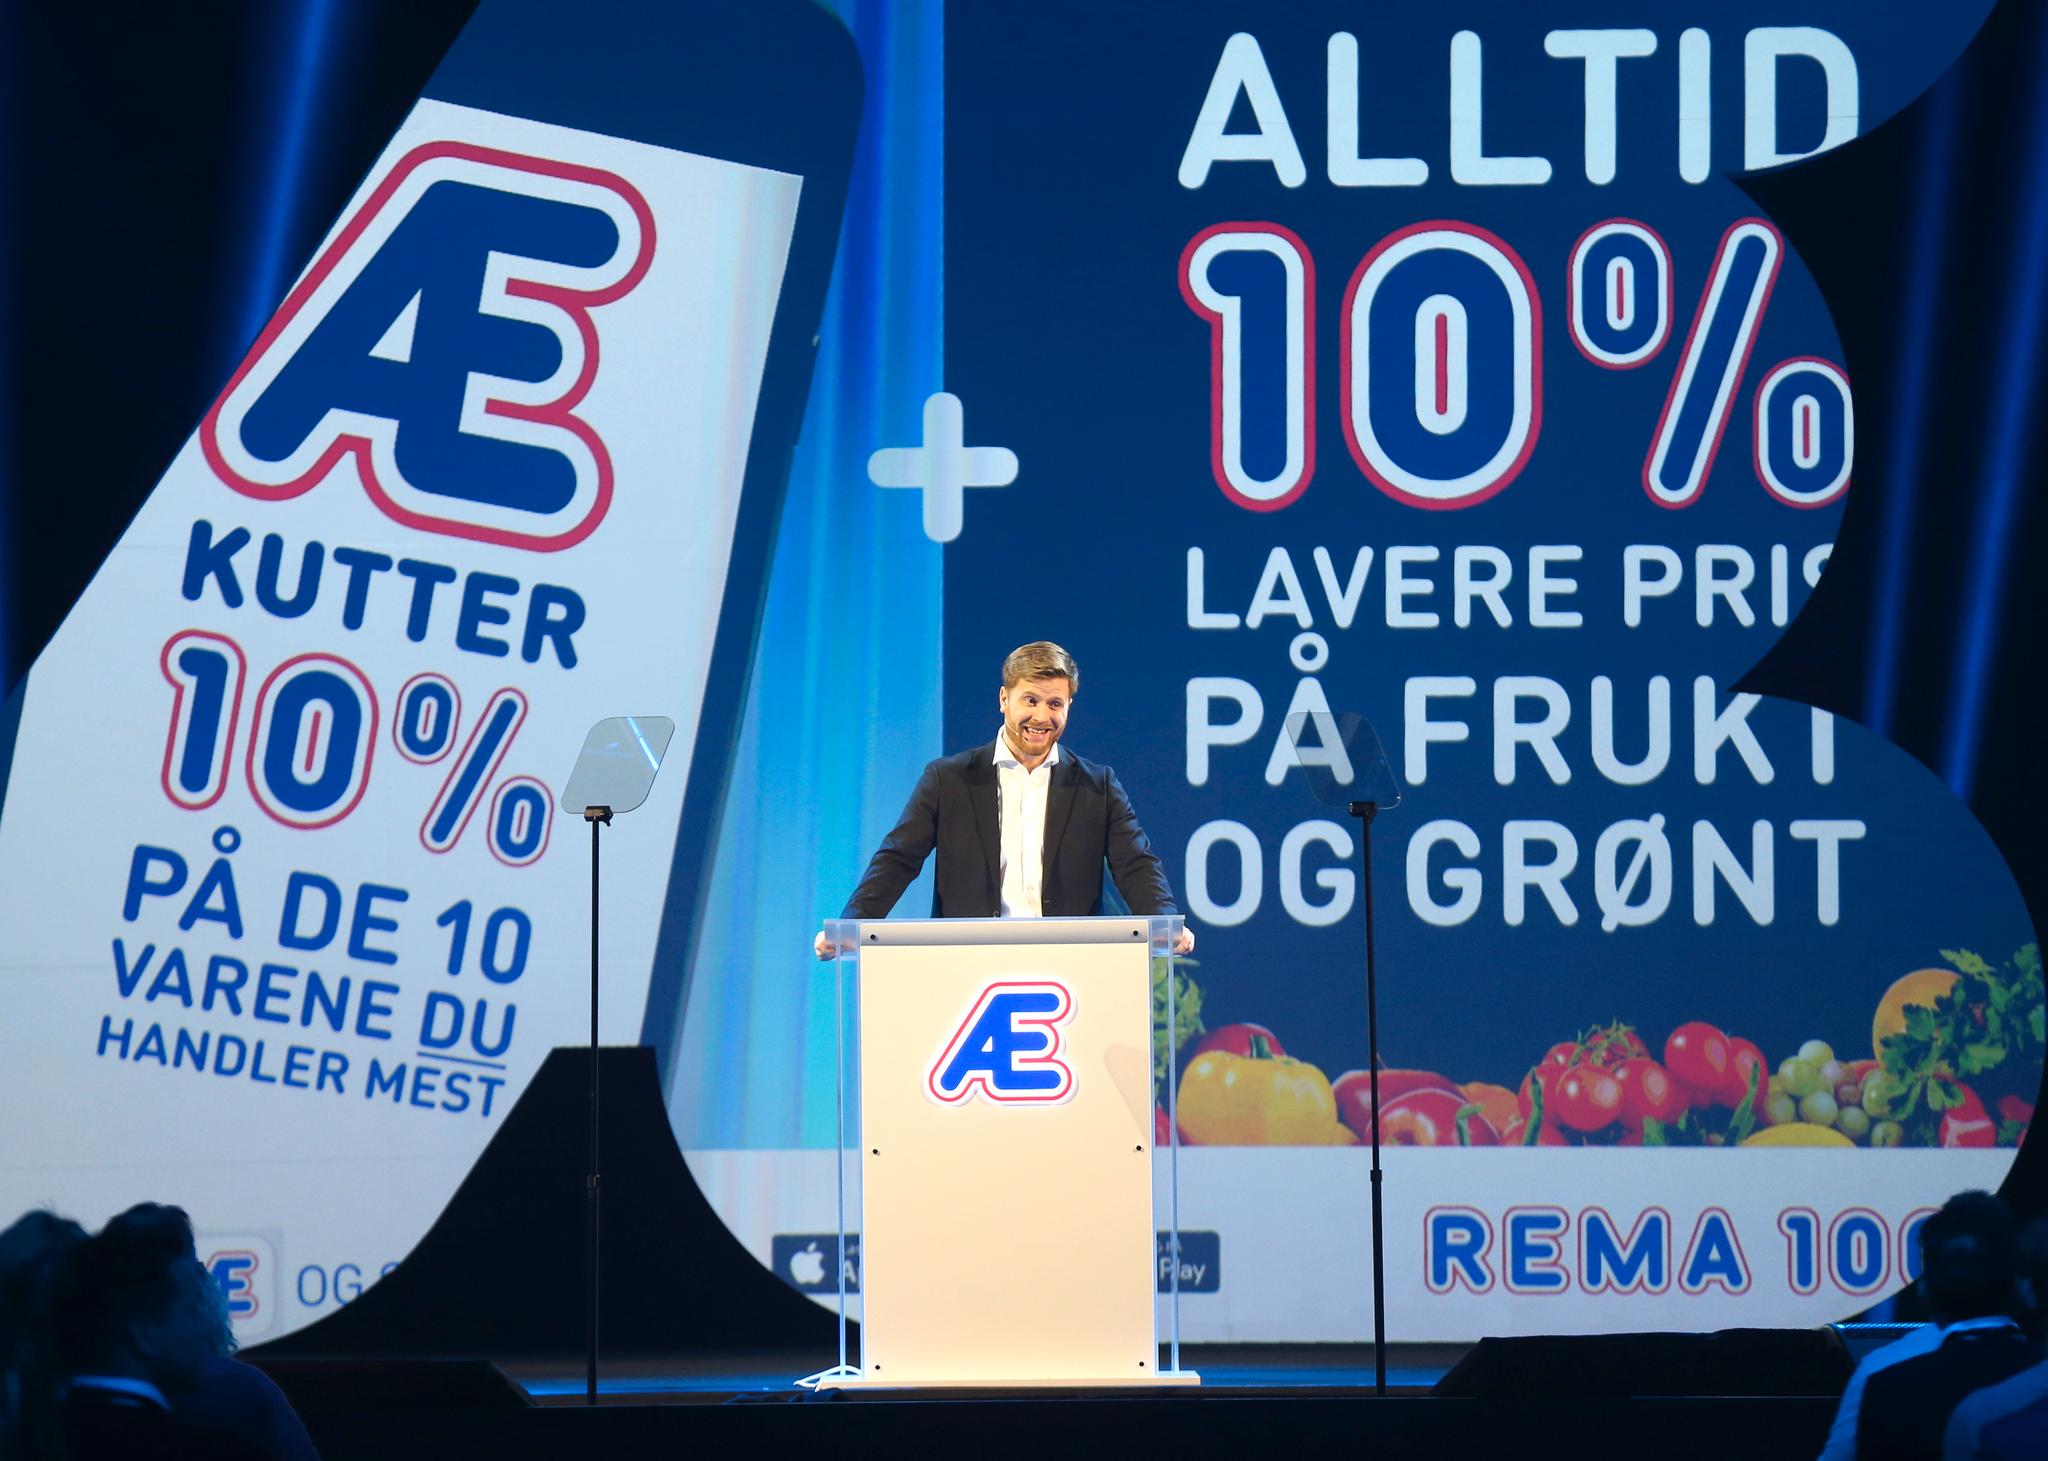 Rema samlet alle de 550 kjøpmennene sine til lanseringen av "Æ" på begynnelsen av året. Kundeprogrammet Æ ble presentert av konserndirektør for strategi og innkjøp i Rema 1000, Lars Kristian Lindberg.